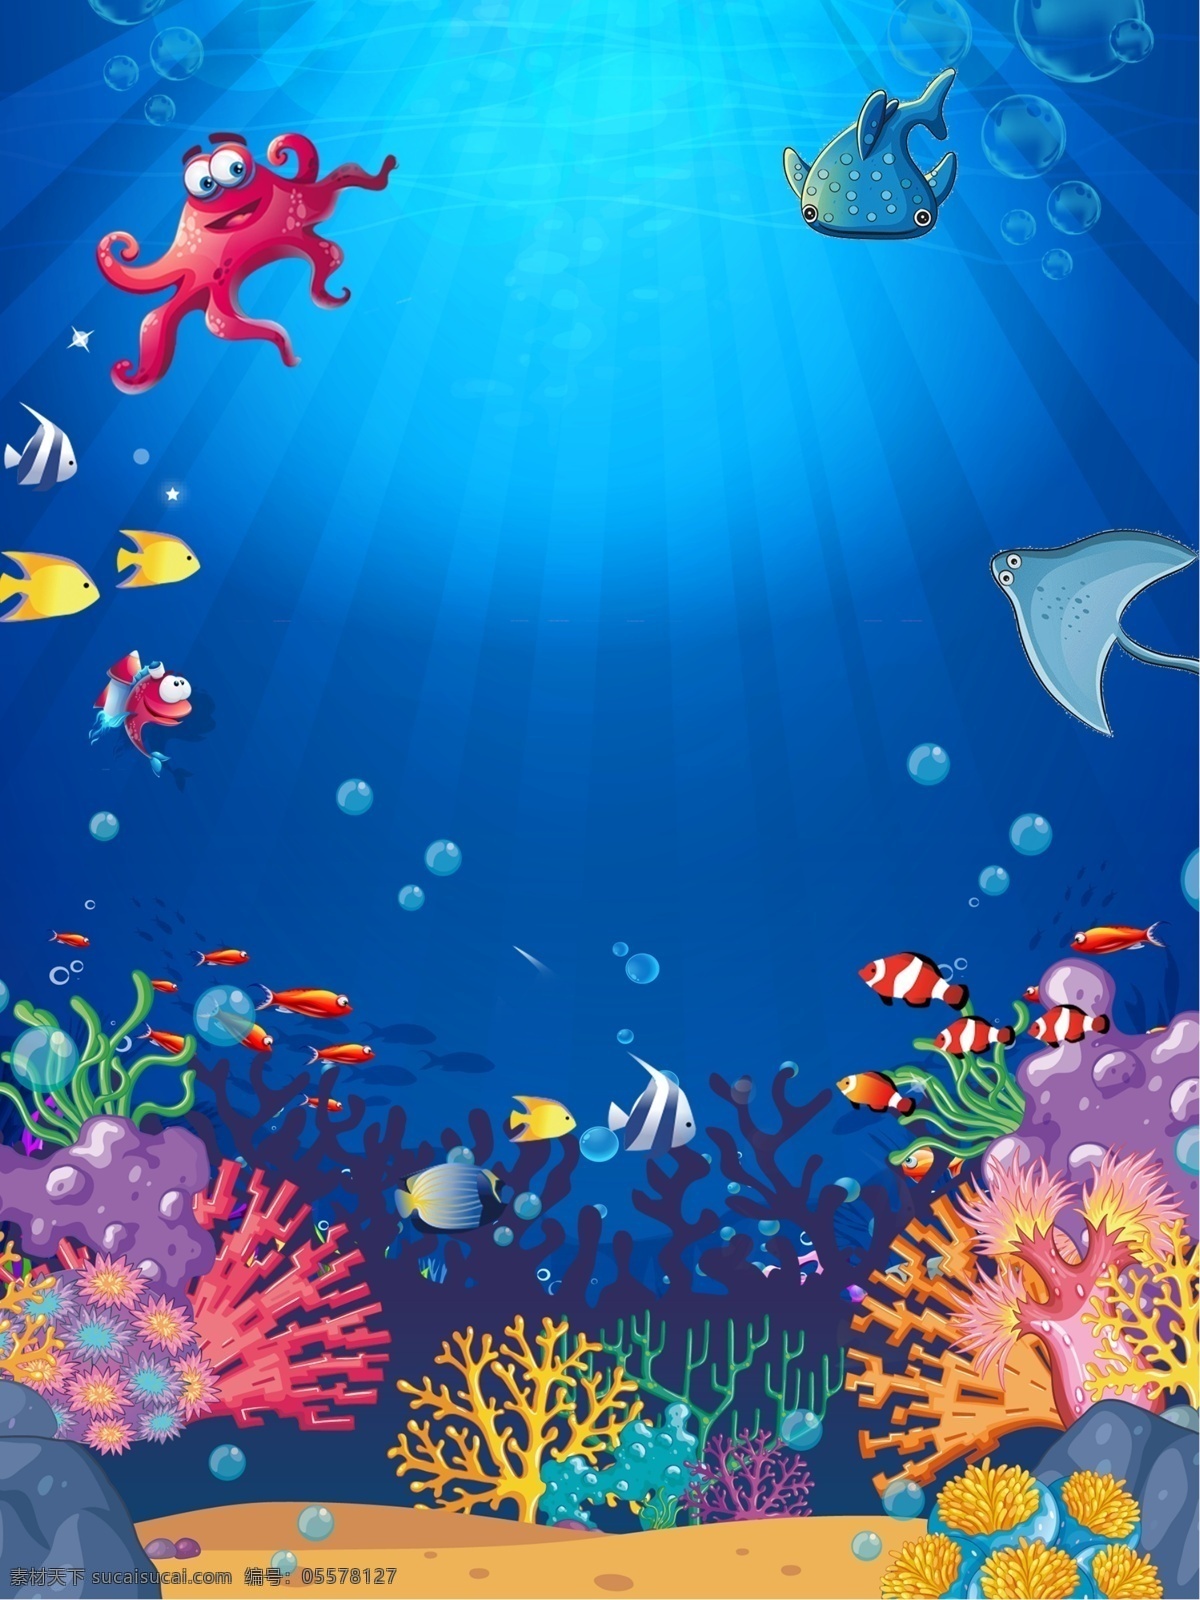 卡通 海洋 沙滩 天空 海岛 背景 陆地 白云 椰子树 海洋动物 海藻 珊瑚 鲸鱼 海底 海星 卡通设计